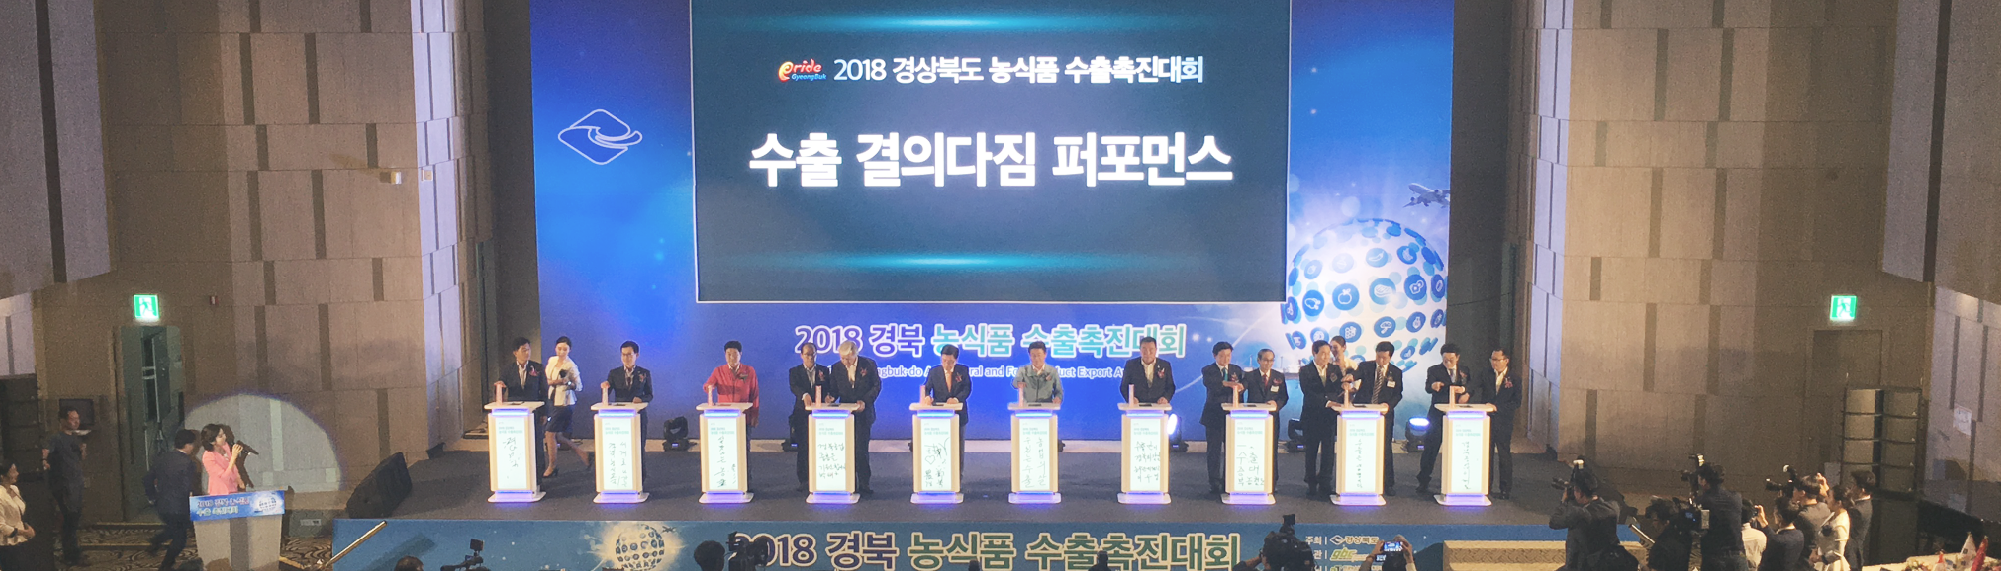 2018 경상북도 농식품 수출촉진대회